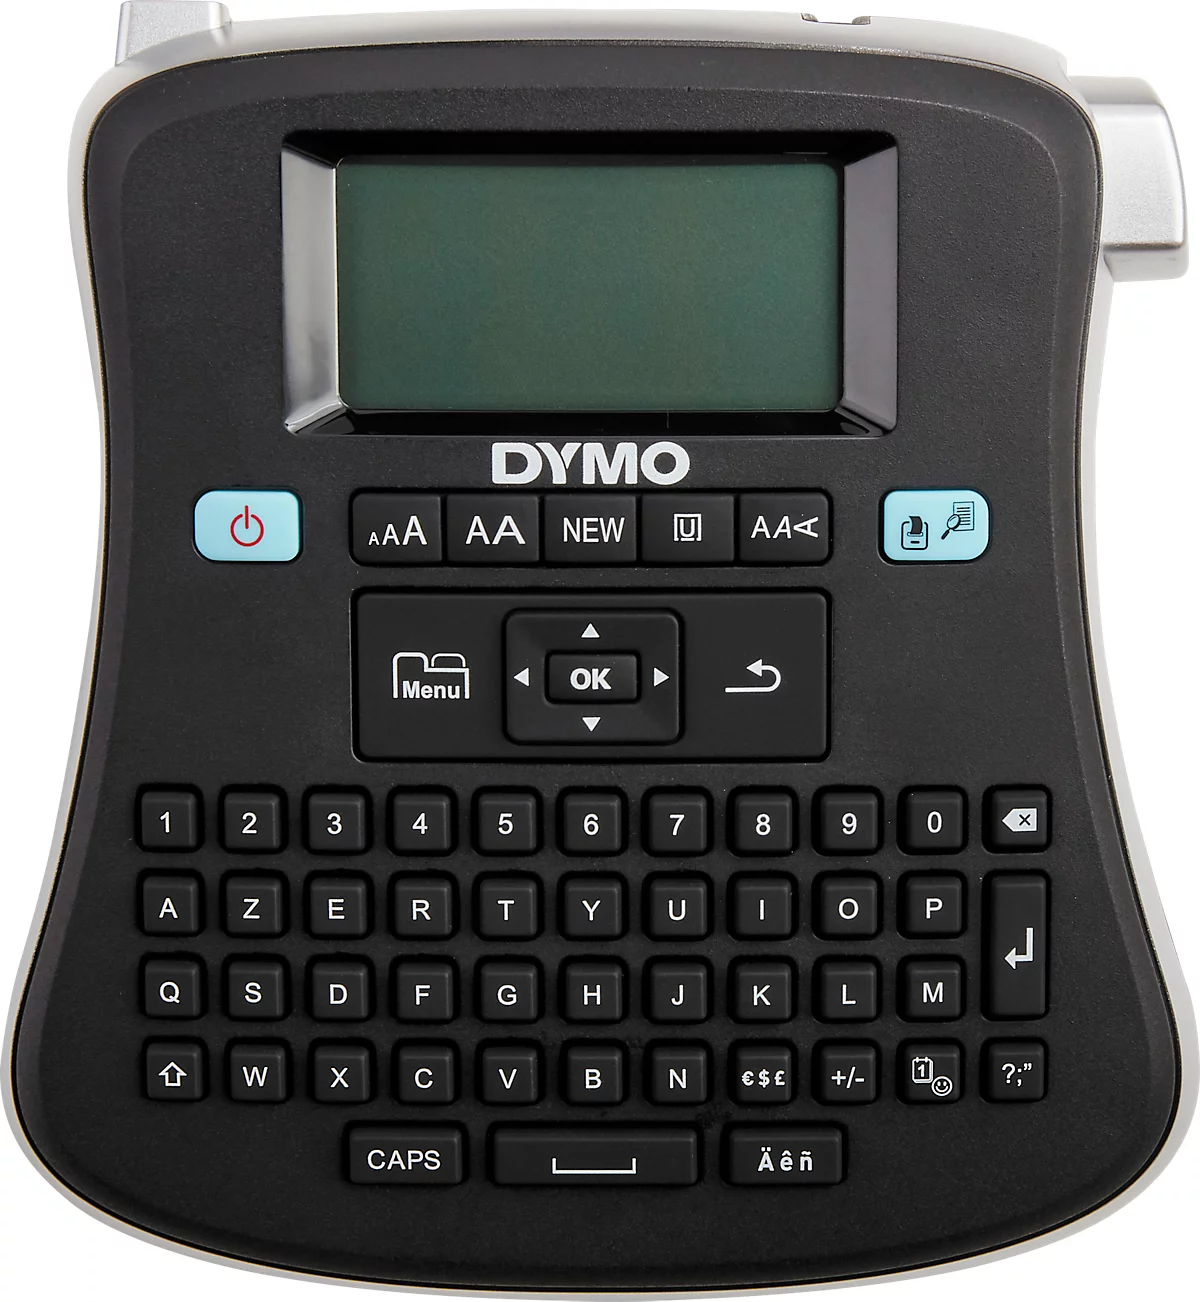 Labelmanager Dymo Etiqueteuse Dymo Labelmanager 210 D - prix pas